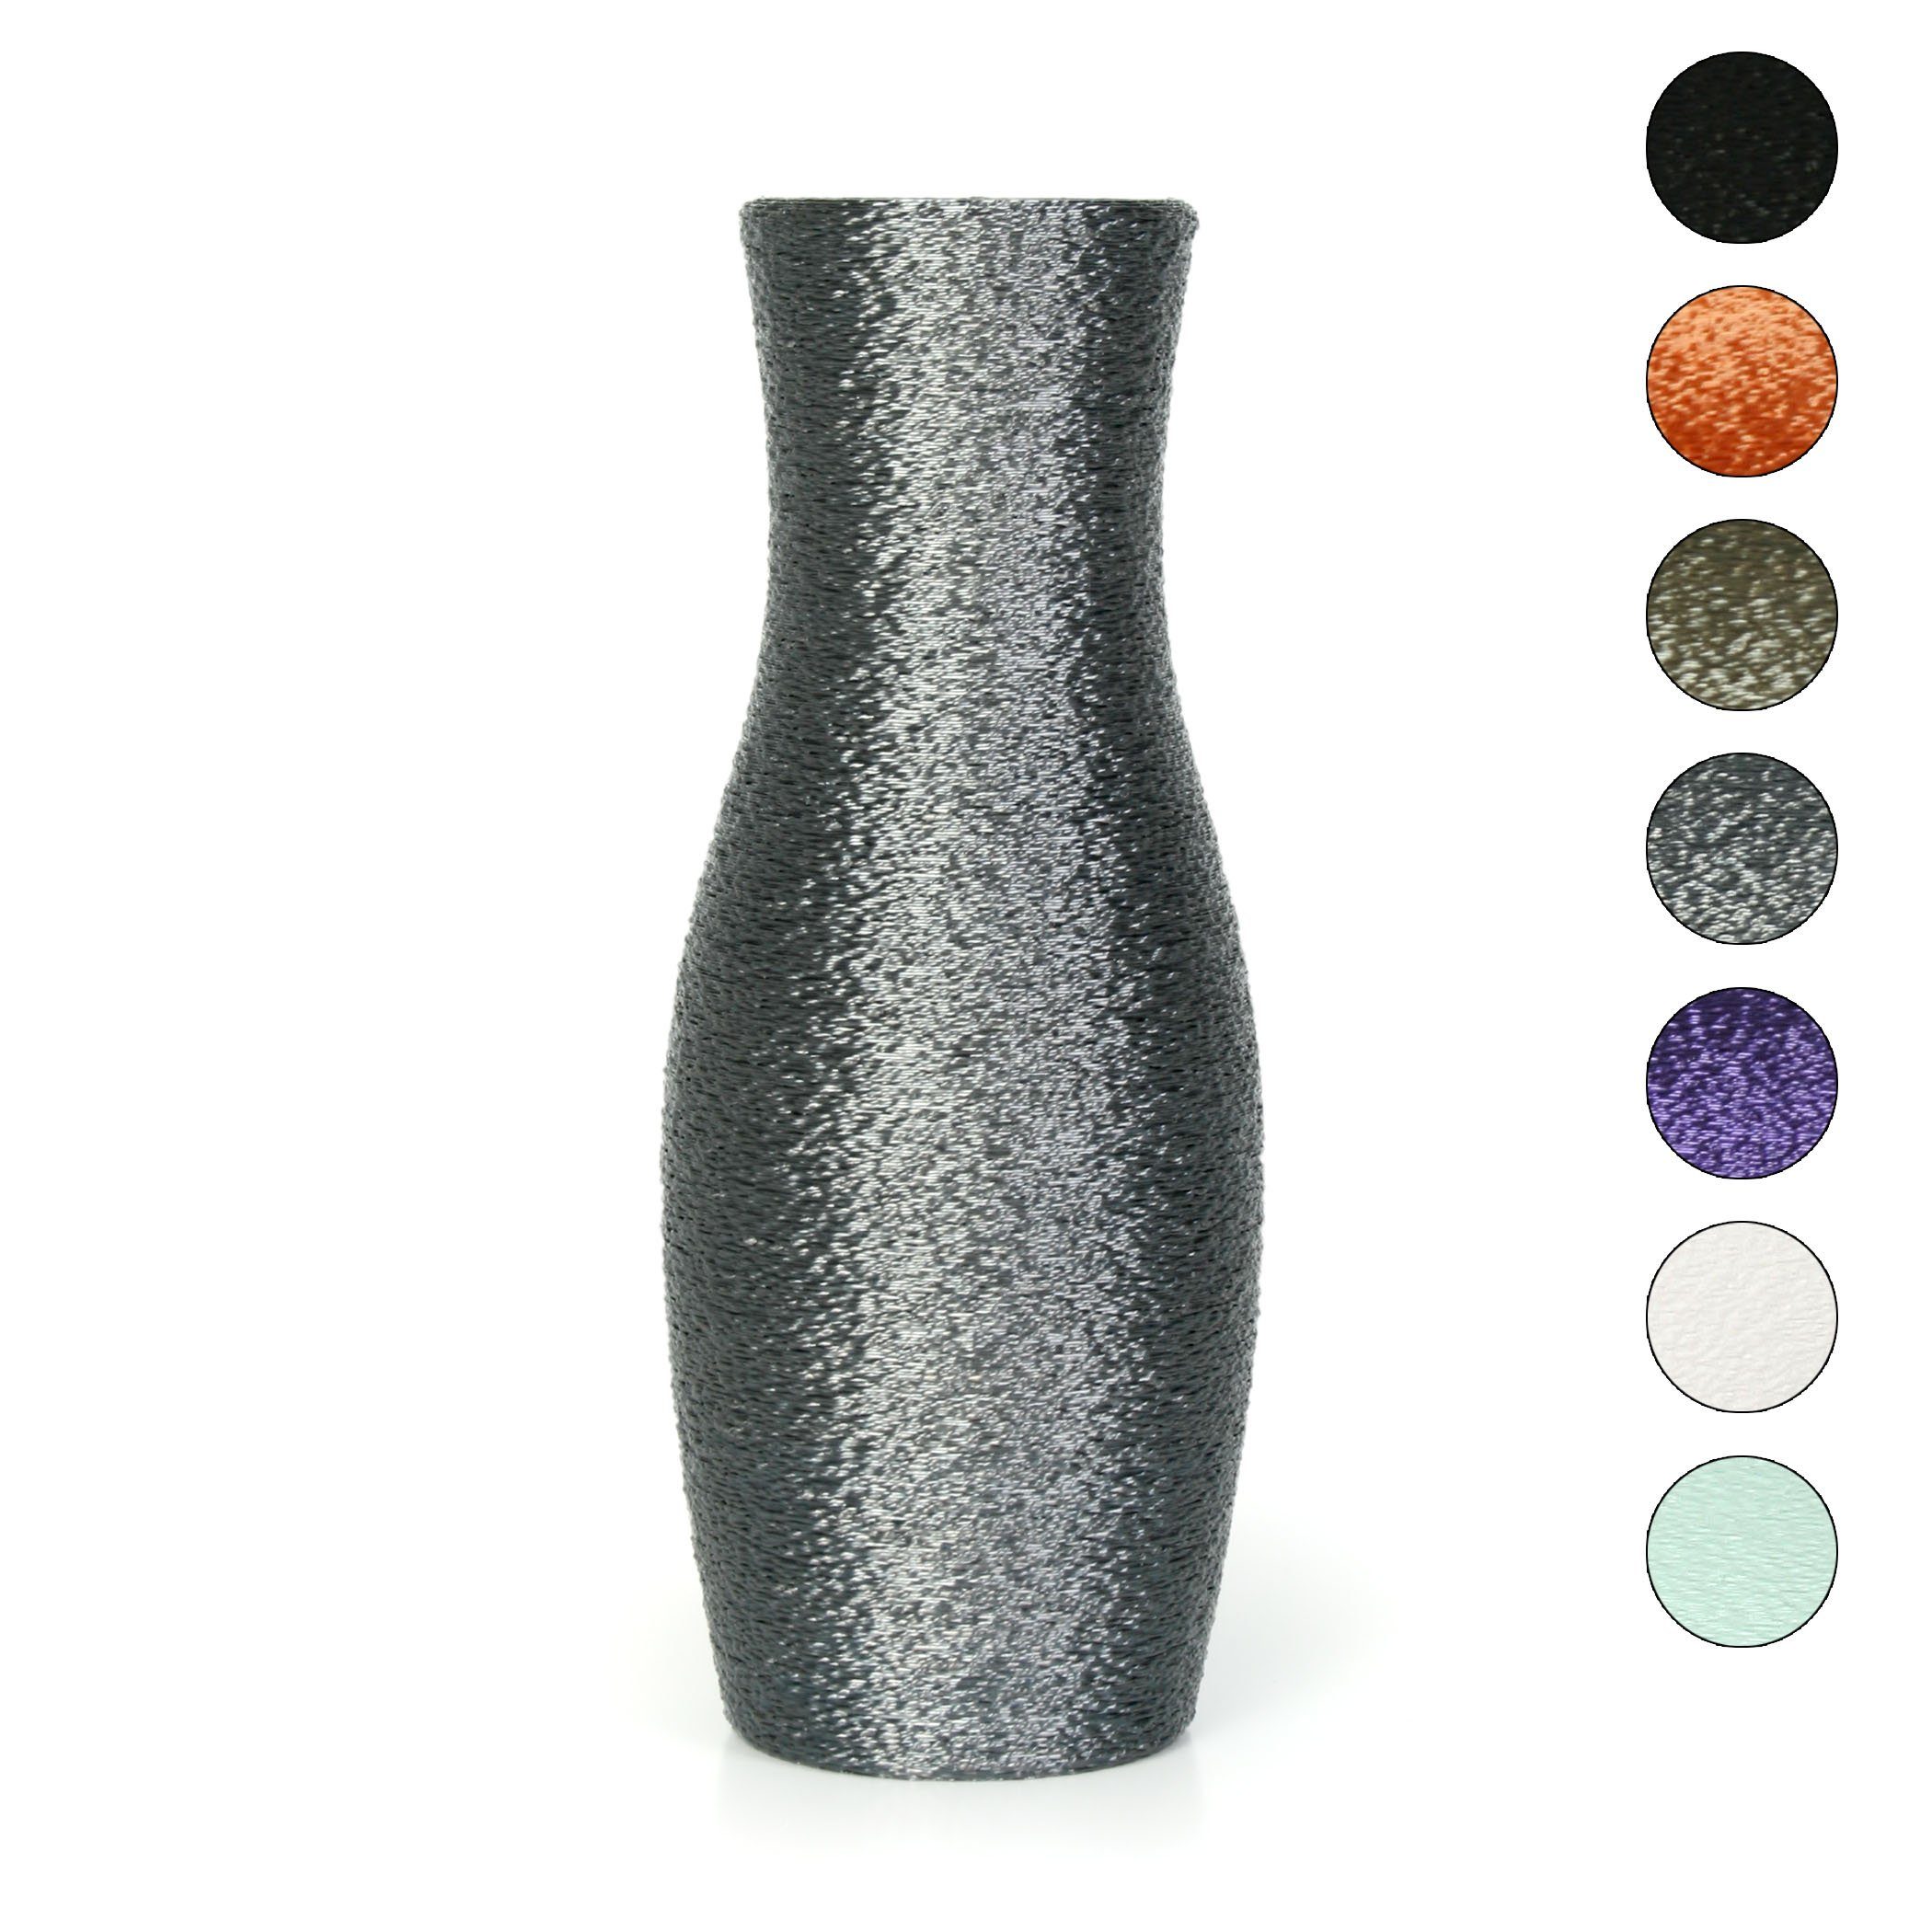 Kreative Feder Dekovase Designer Vase – Dekorative Blumenvase aus Bio-Kunststoff, aus nachwachsenden Rohstoffen; wasserdicht & bruchsicher Old Silver | Dekovasen